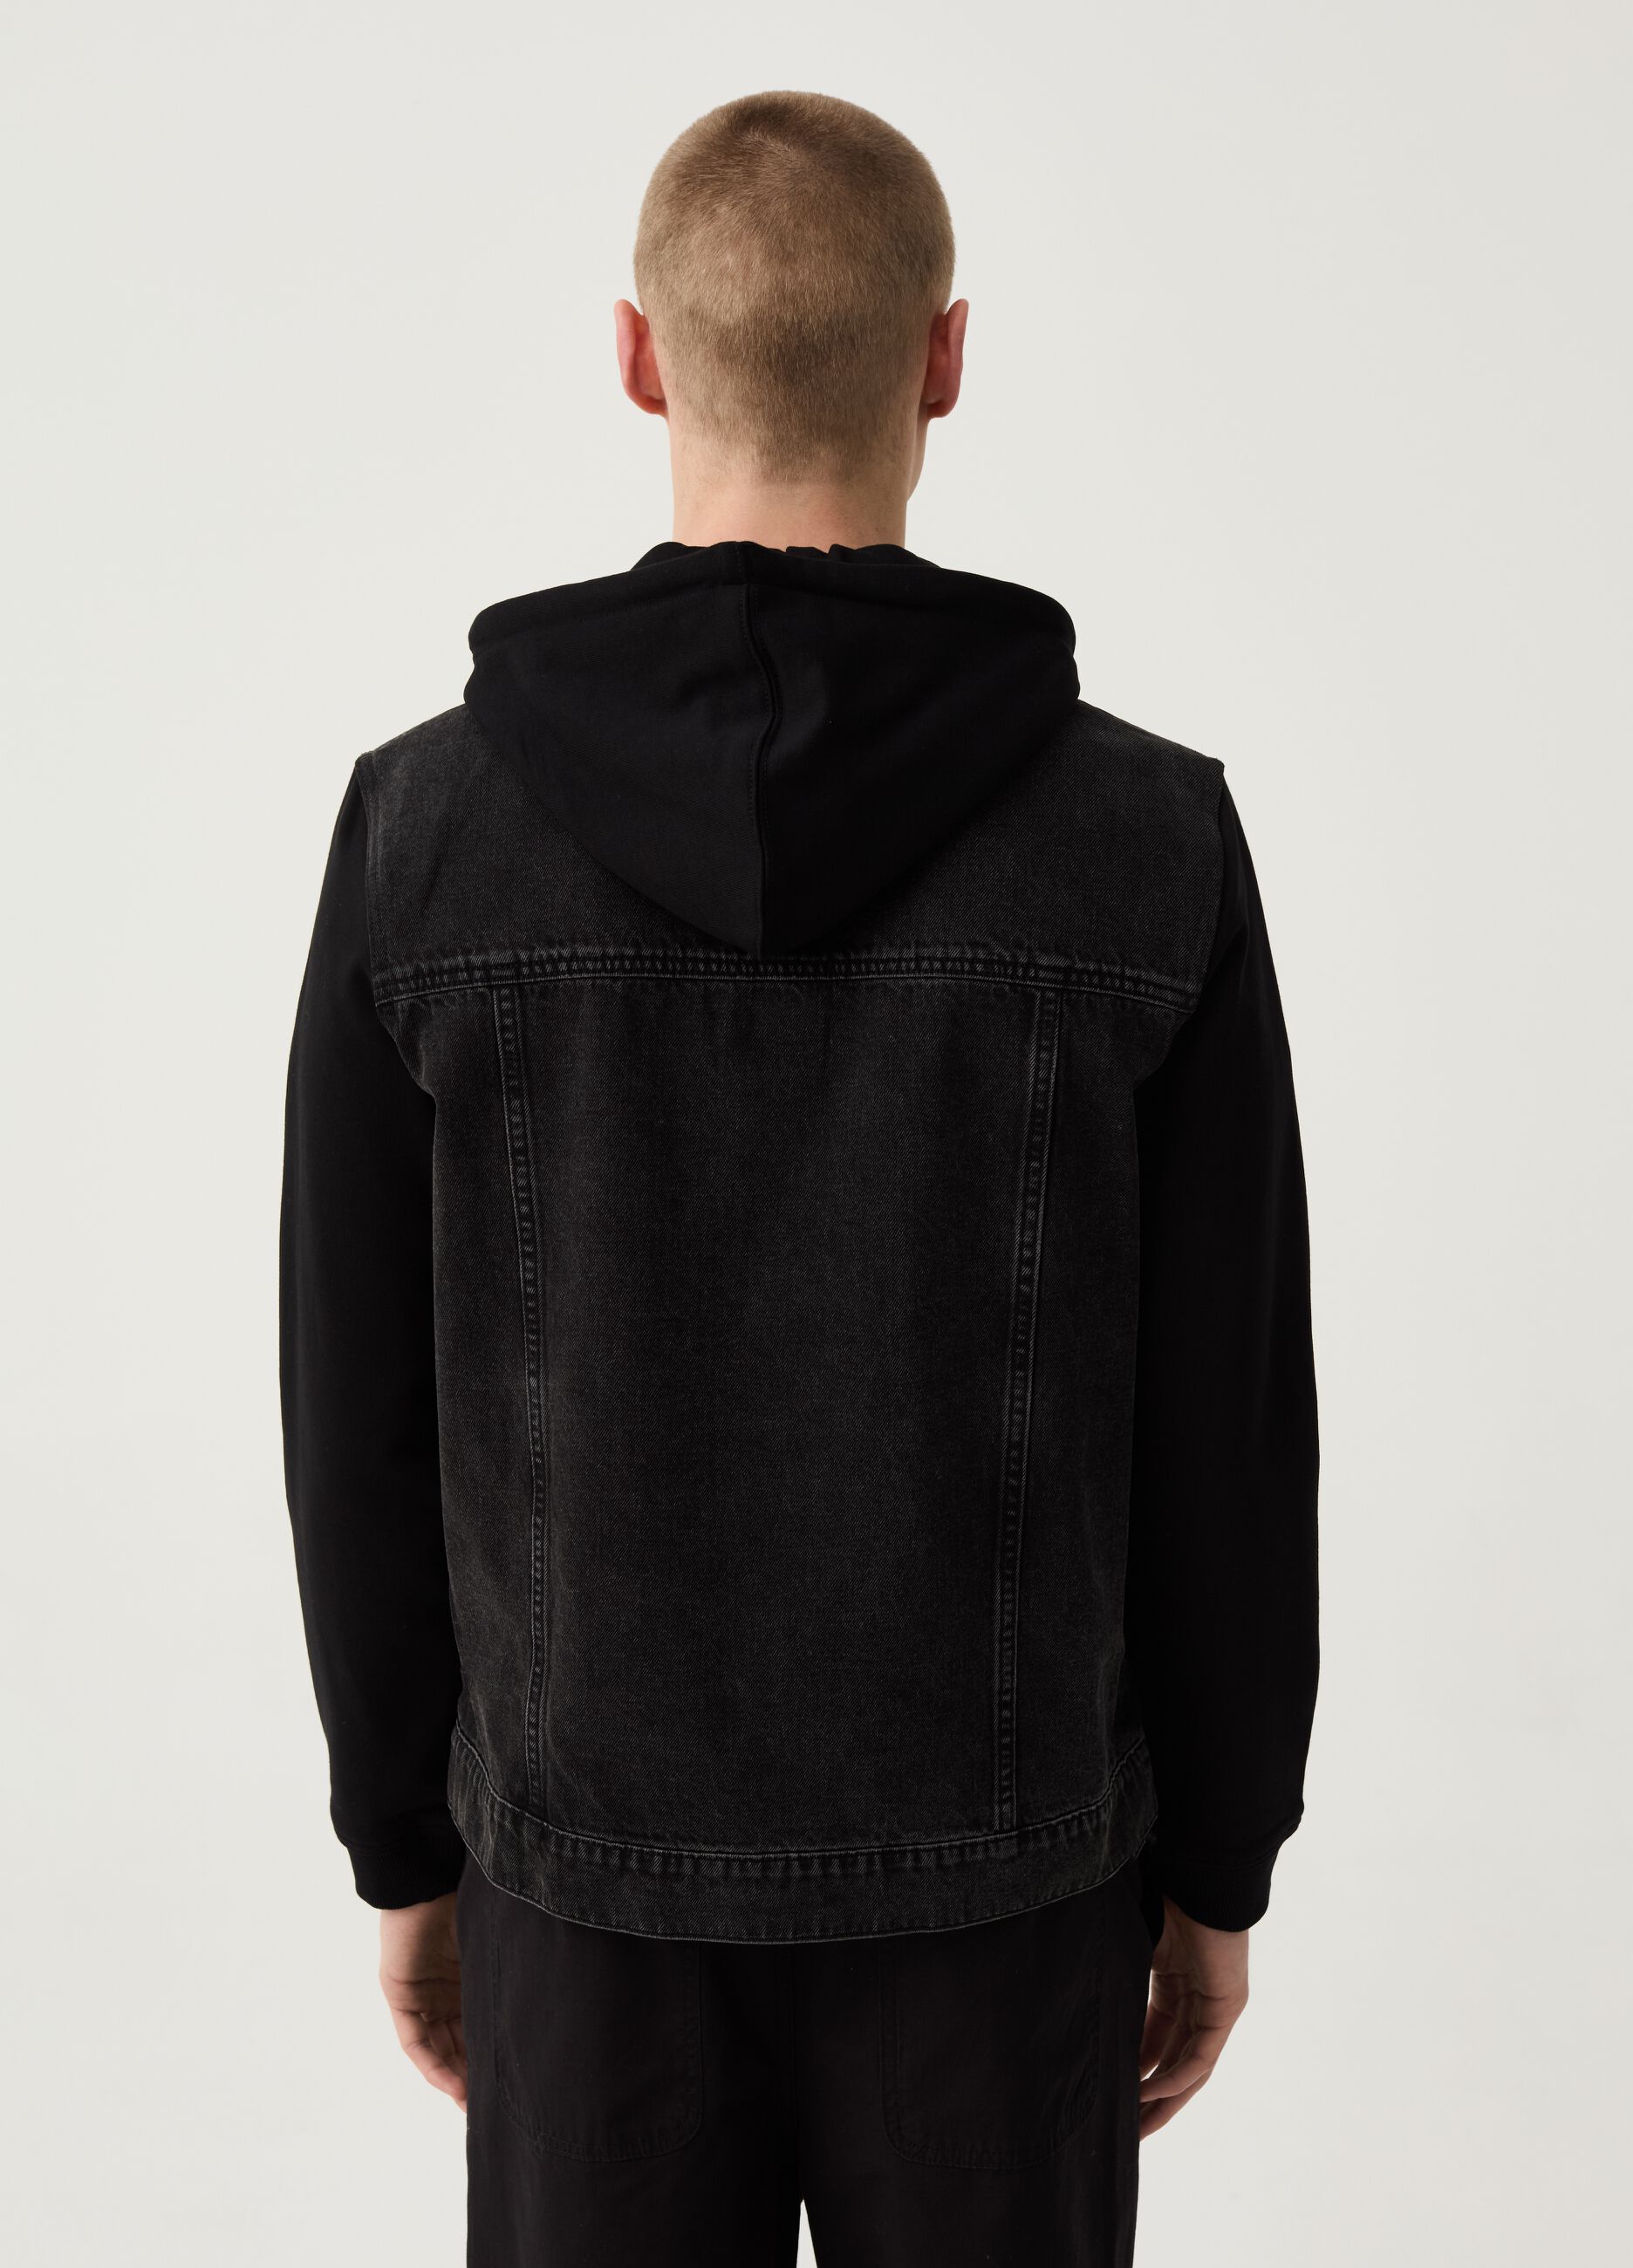 Denim jacket with fleece sleeves and hood